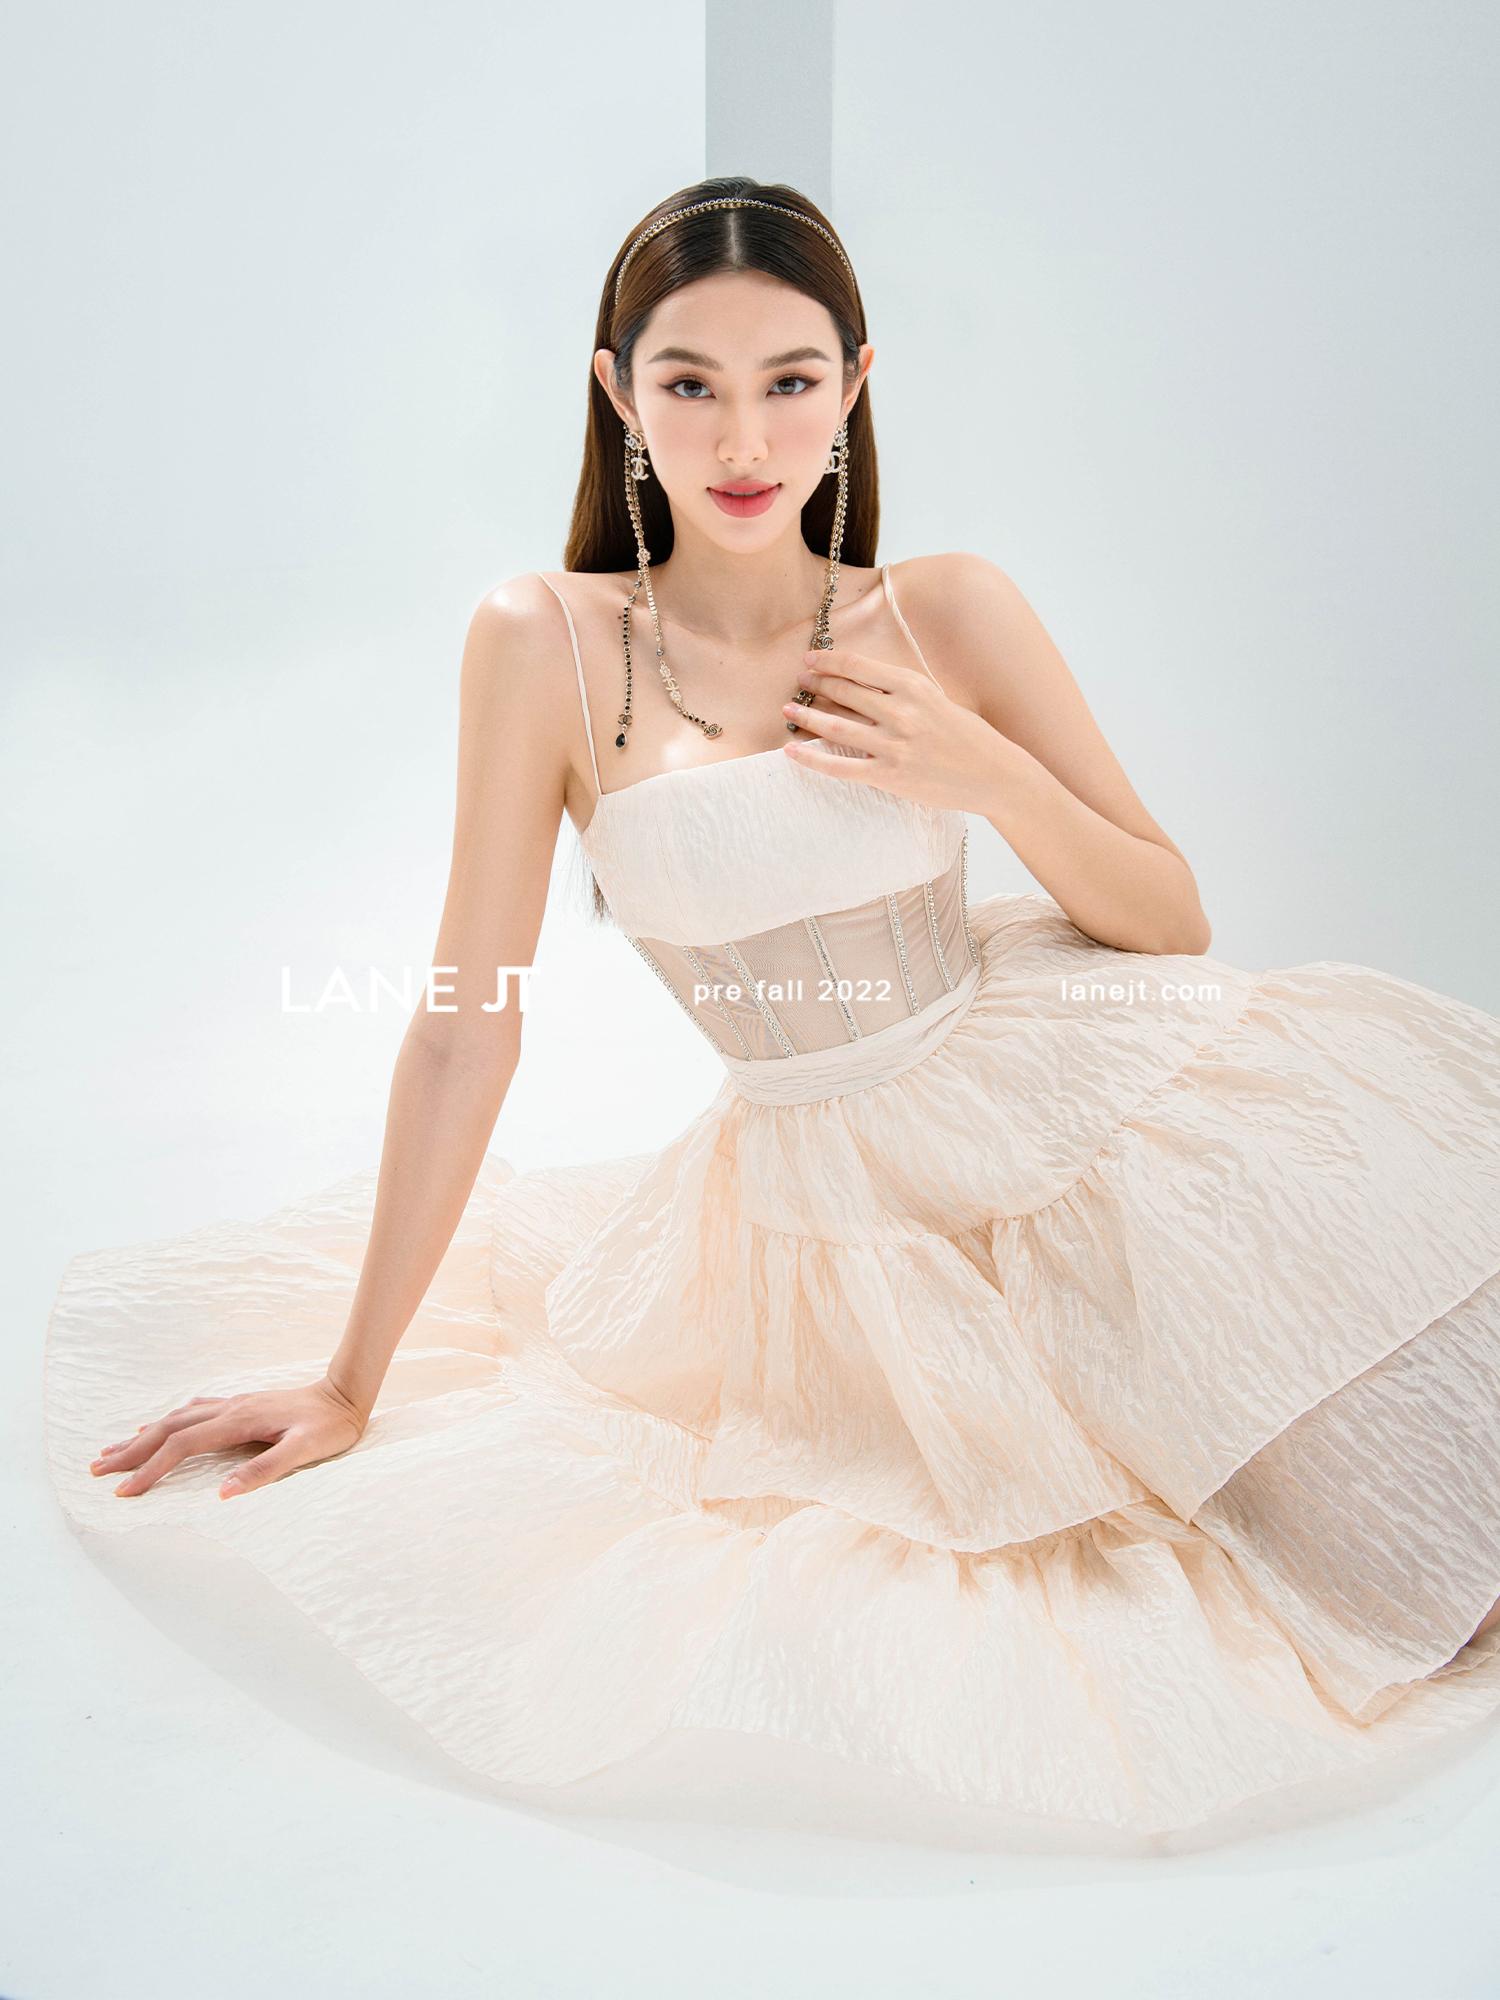 Hoa hậu Thùy Tiên hóa thân thành quý cô ngọt ngào, quyến rũ trong trang phục Lane JT - Ảnh 3.